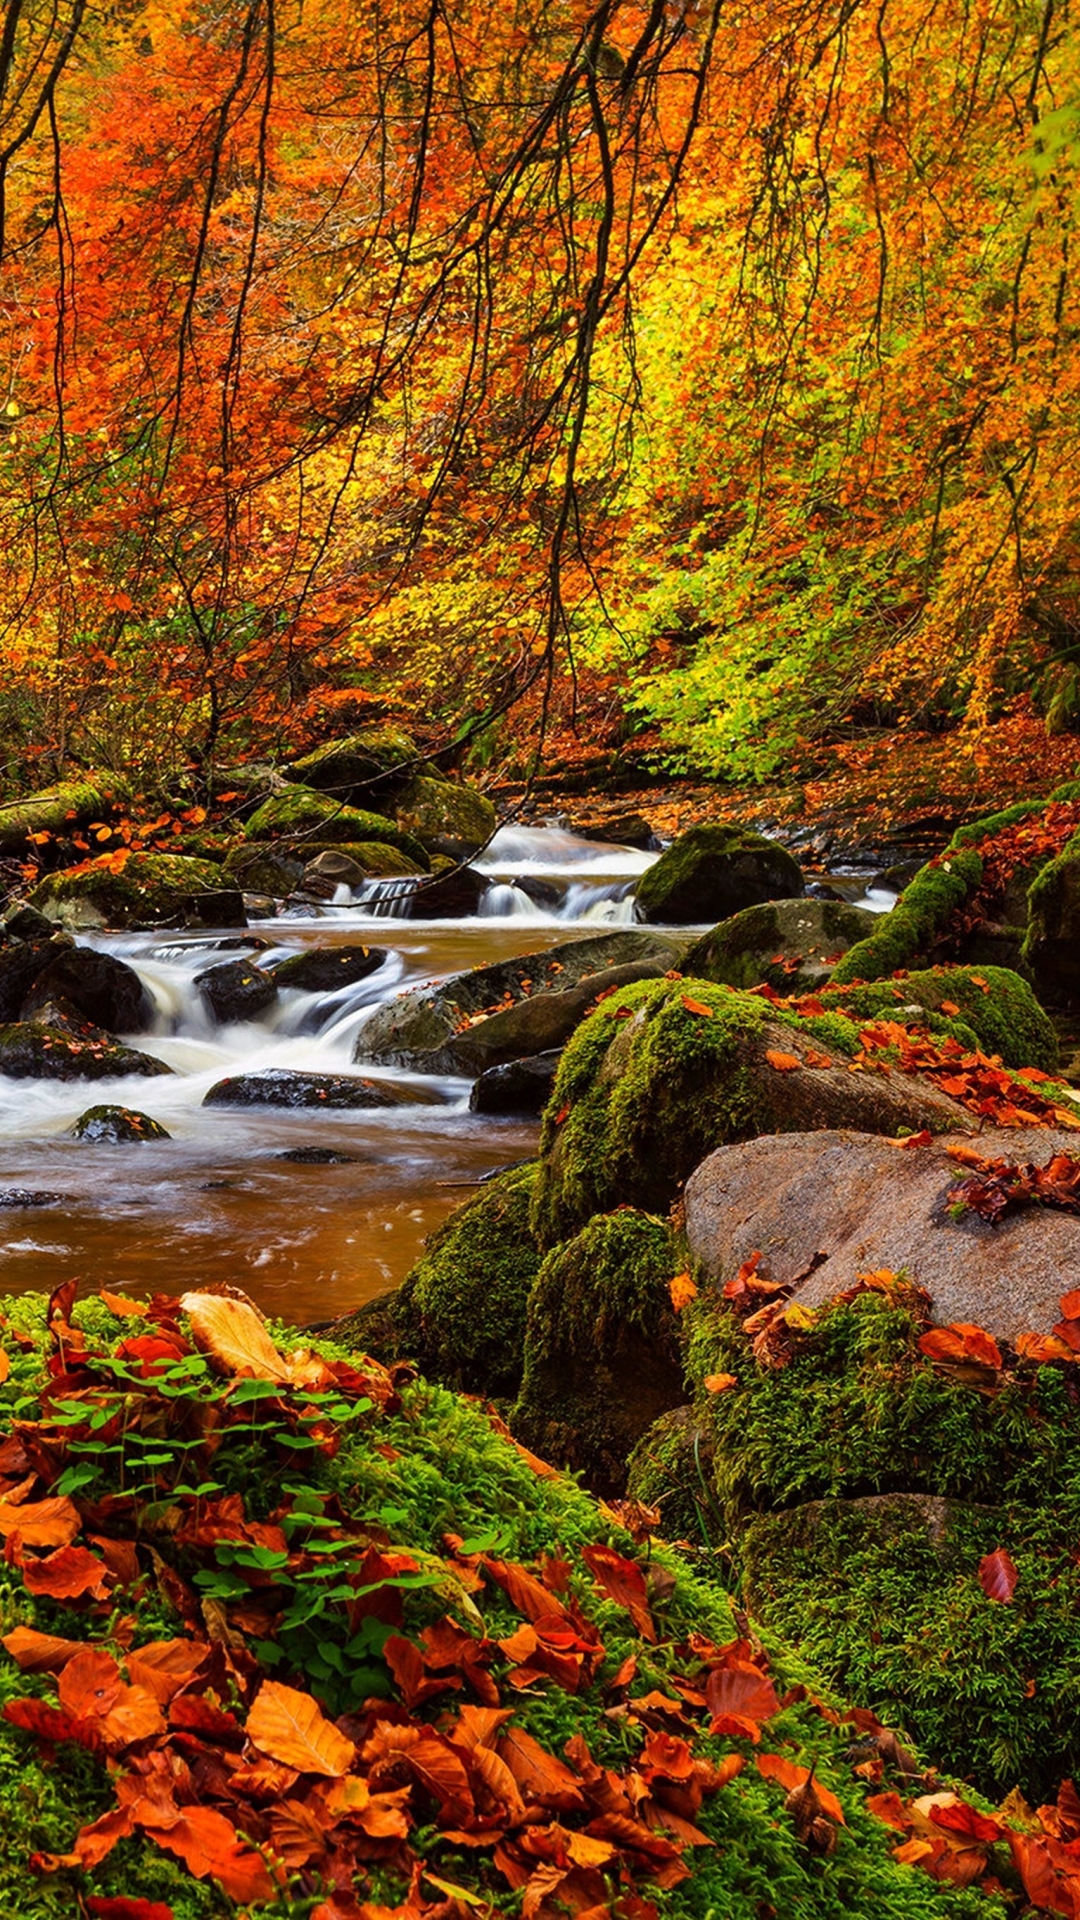 Stream in Autumn Forest